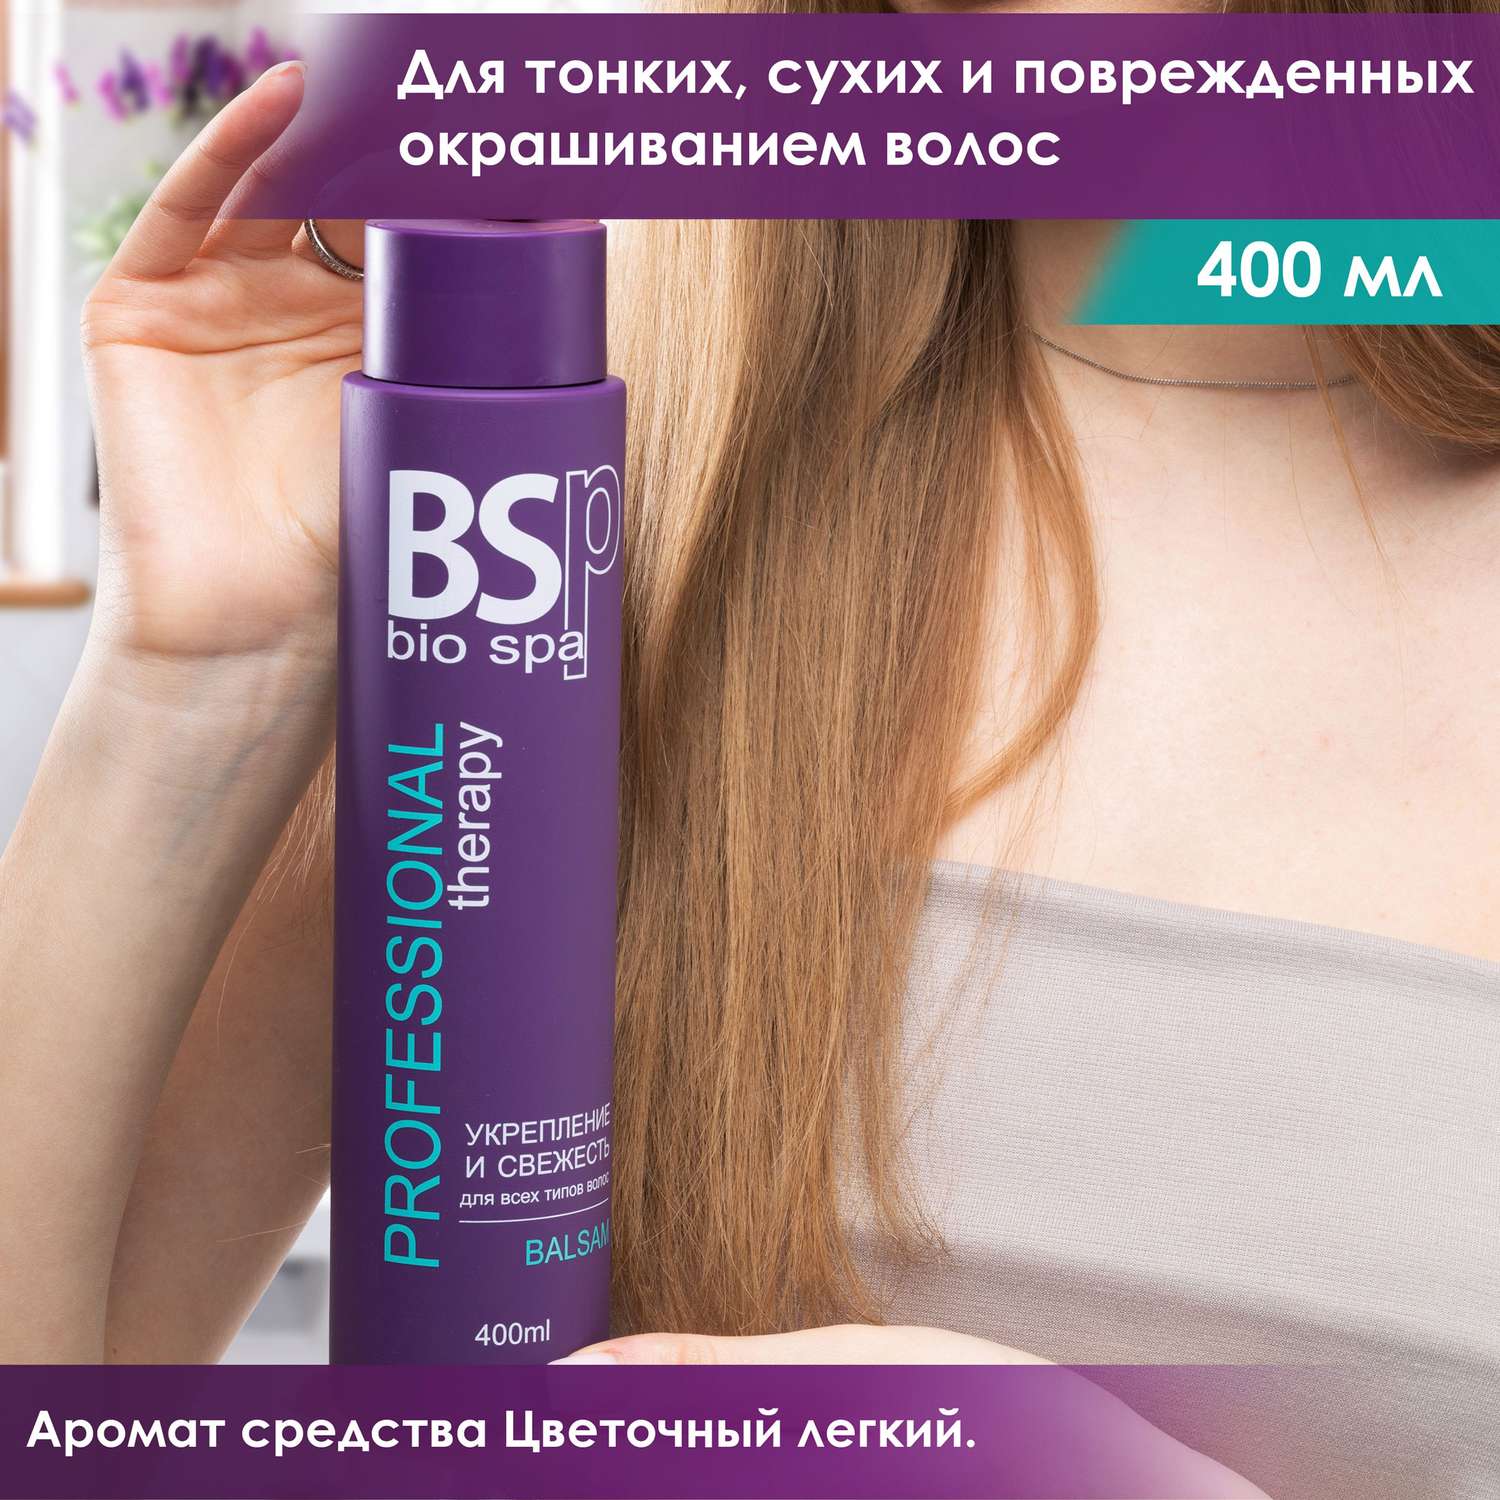 Кондиционер для волос BSP bio spa укрепление и свежесть 400 мл - фото 2